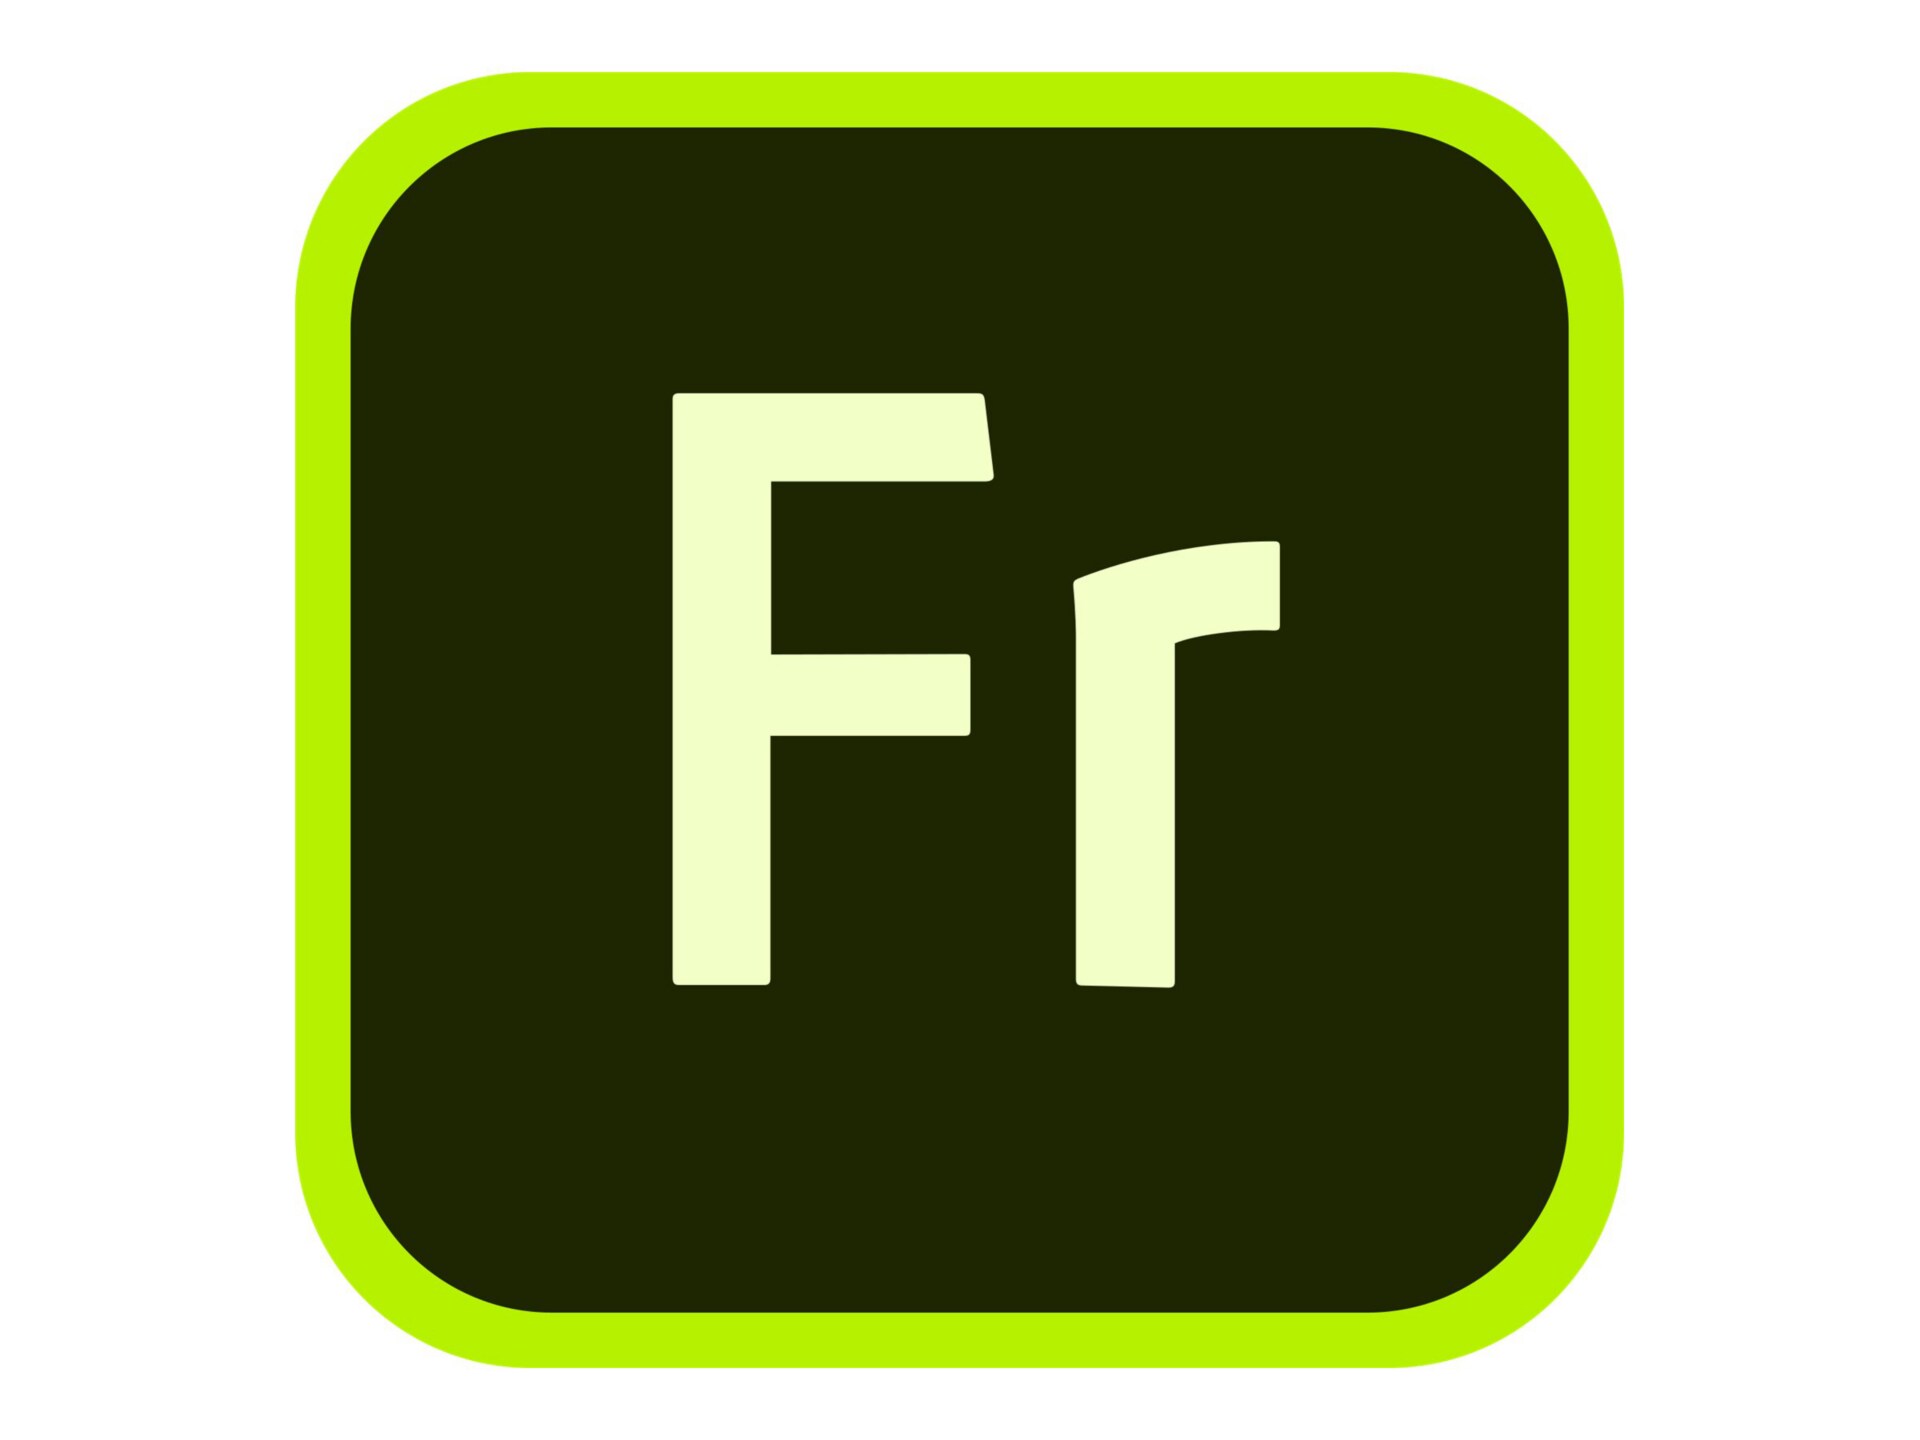 Adobe Fresco for enterprise - Subscription New (2 months) - 1 user